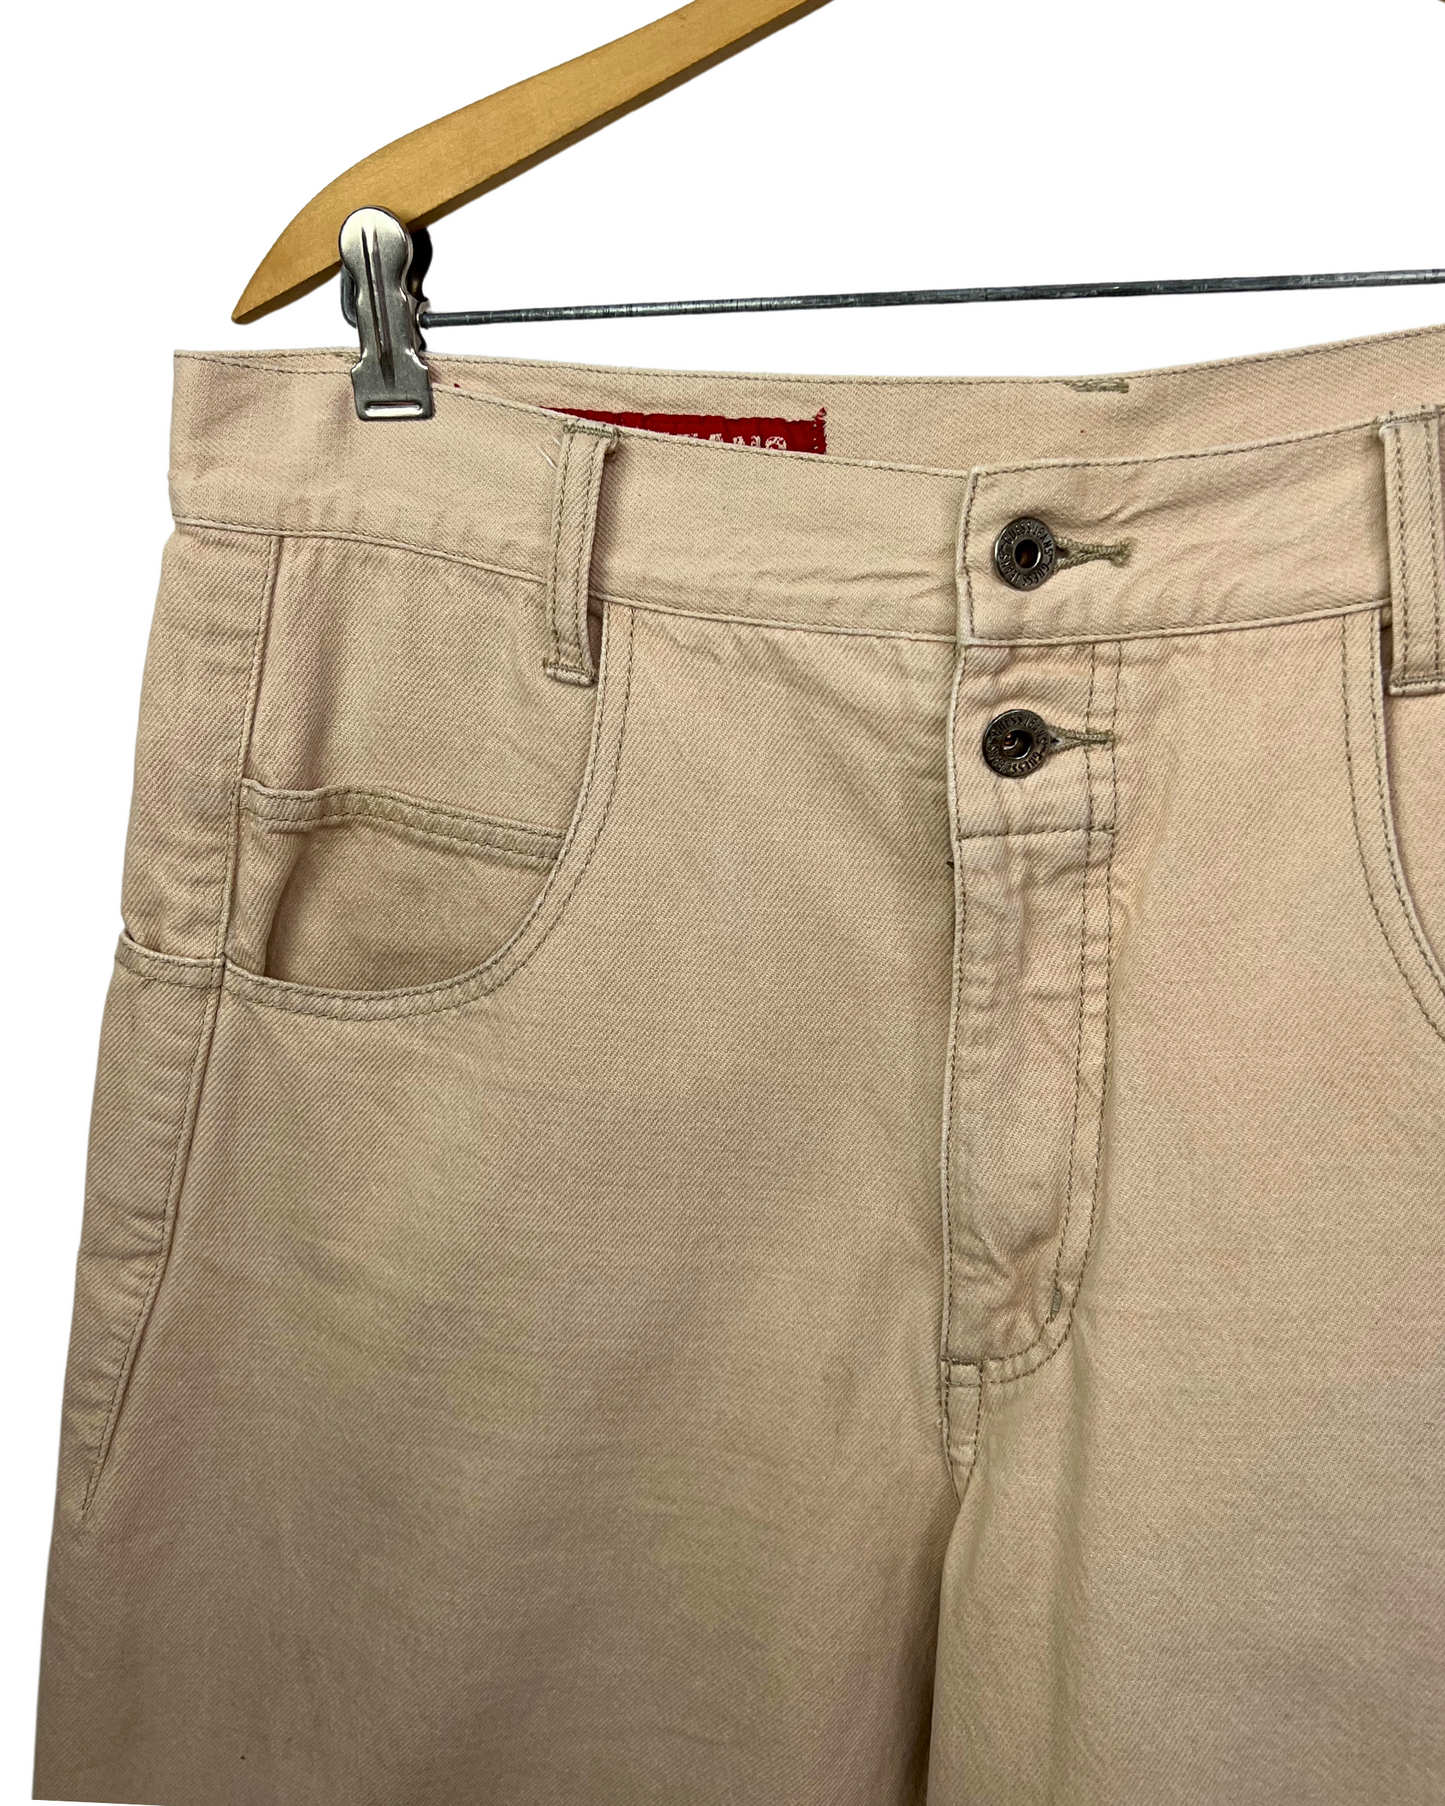 90’s Guess Jeans 5 Pocket Khaki 10” Jean Shorts Size 32/34